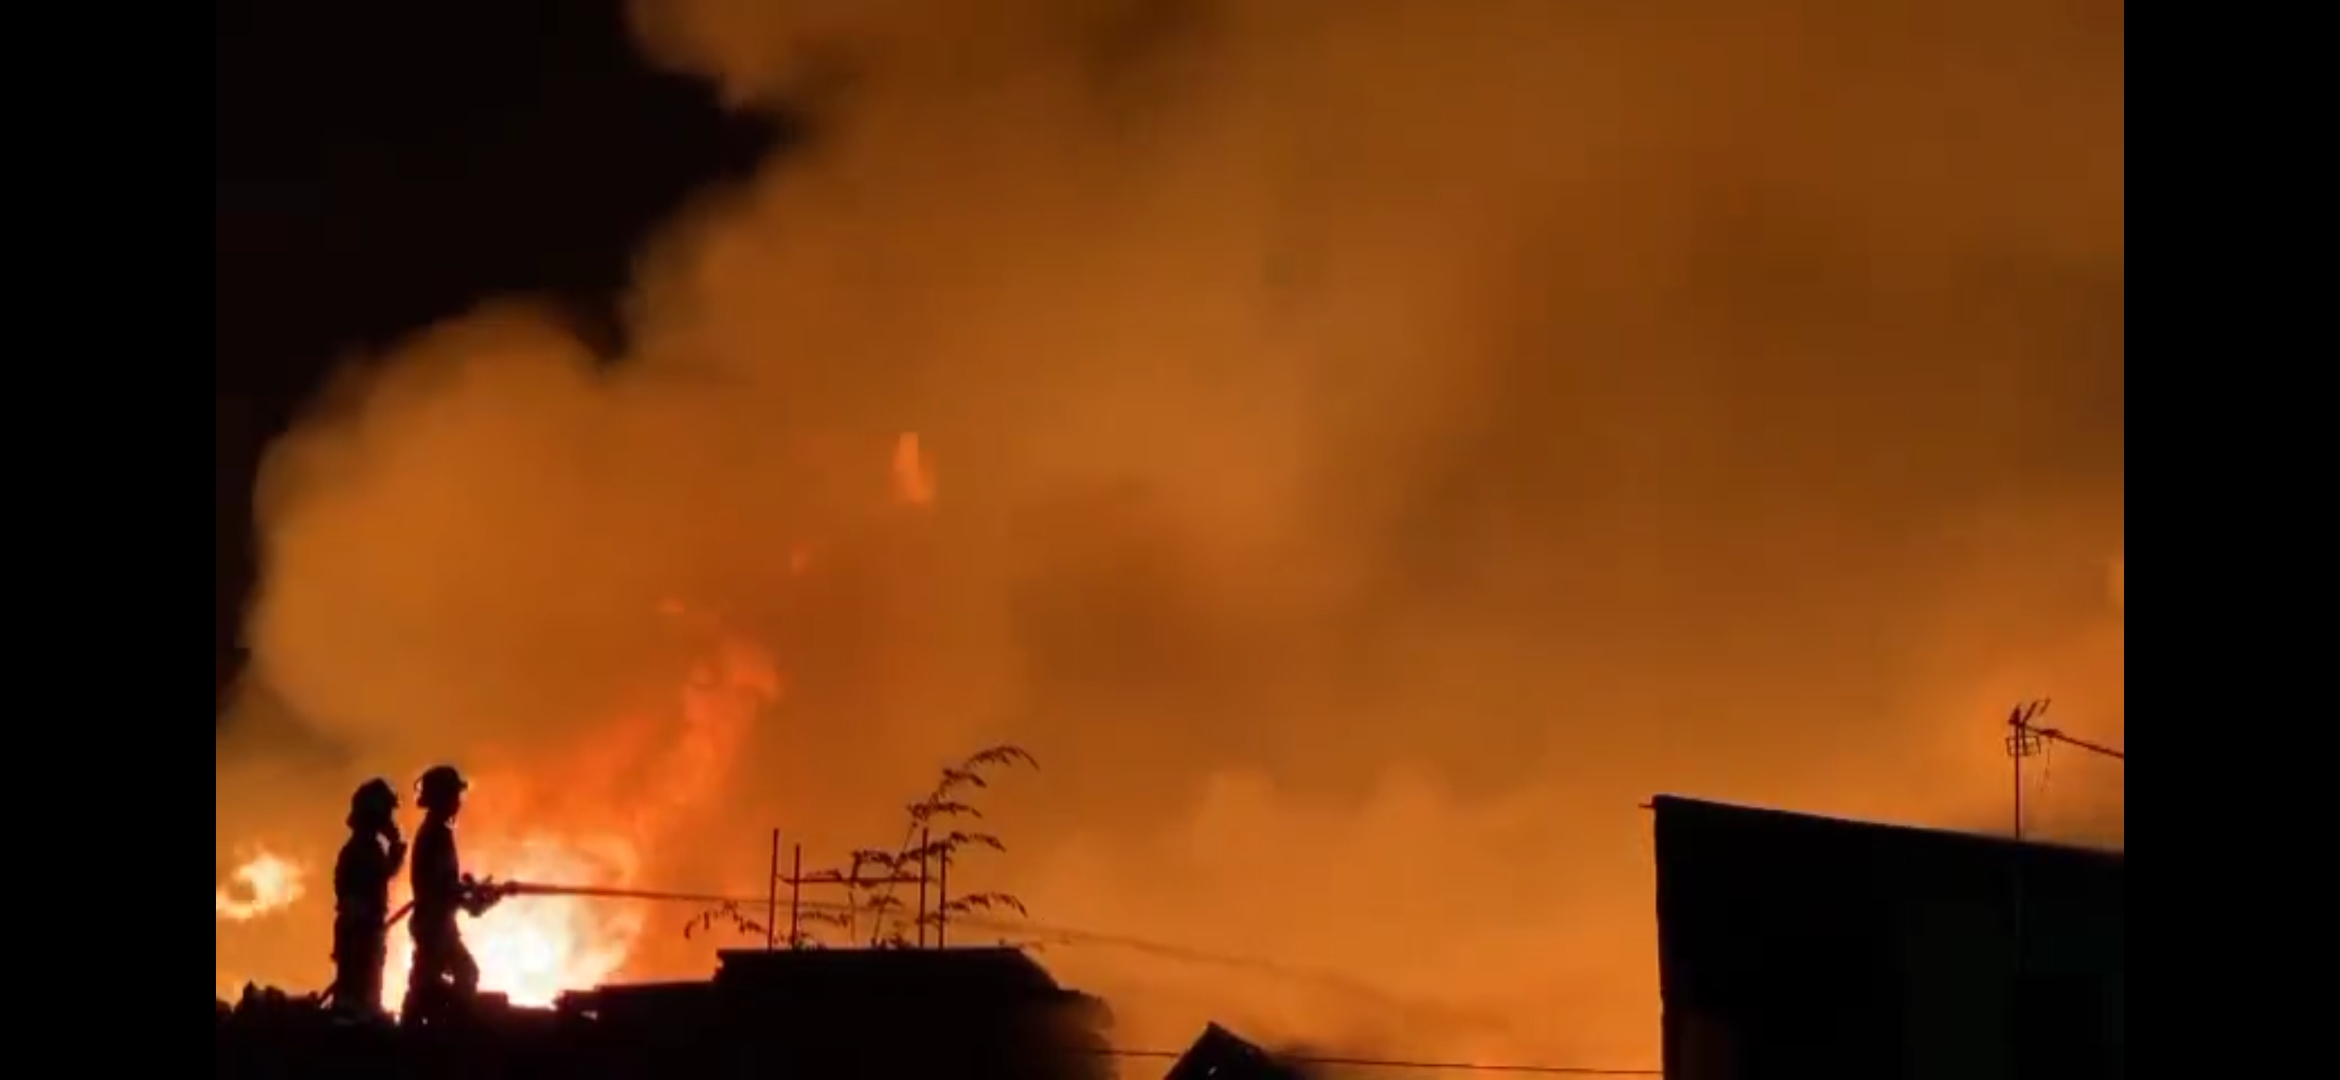 Kondisi Terkini Kebakaran Pasar Kliwon di Solo, Lebih dari 100 Rumah Warga Terdampak dan Mengungsi